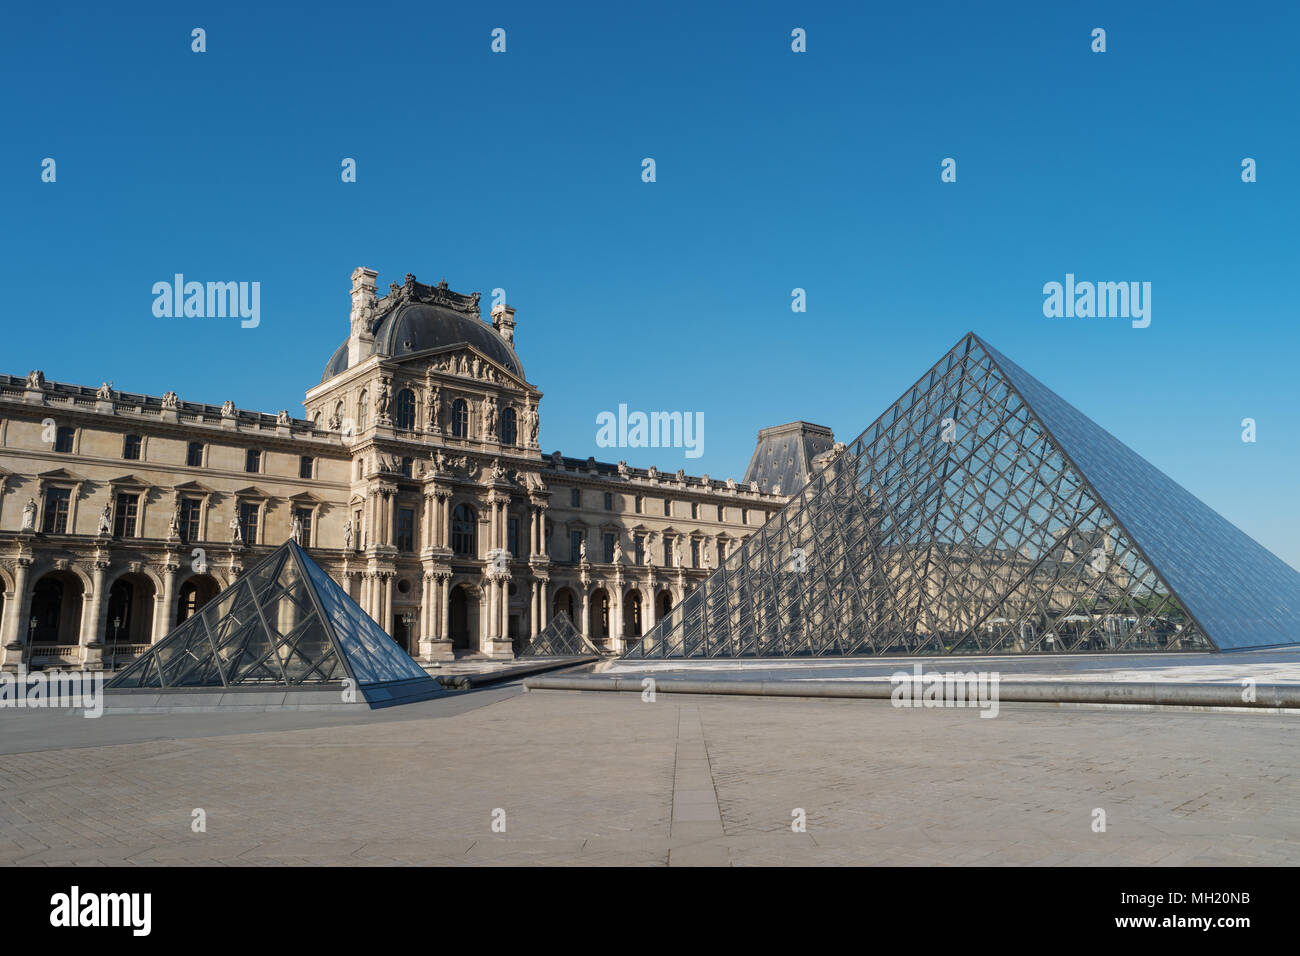 París, Francia, 27 de abril de 2017: El Museo del Louvre, la construcción y la pirámide, Francia, Europa. Museo del Louvre es uno de los museos más grande y más visitado de todo el mundo Foto de stock